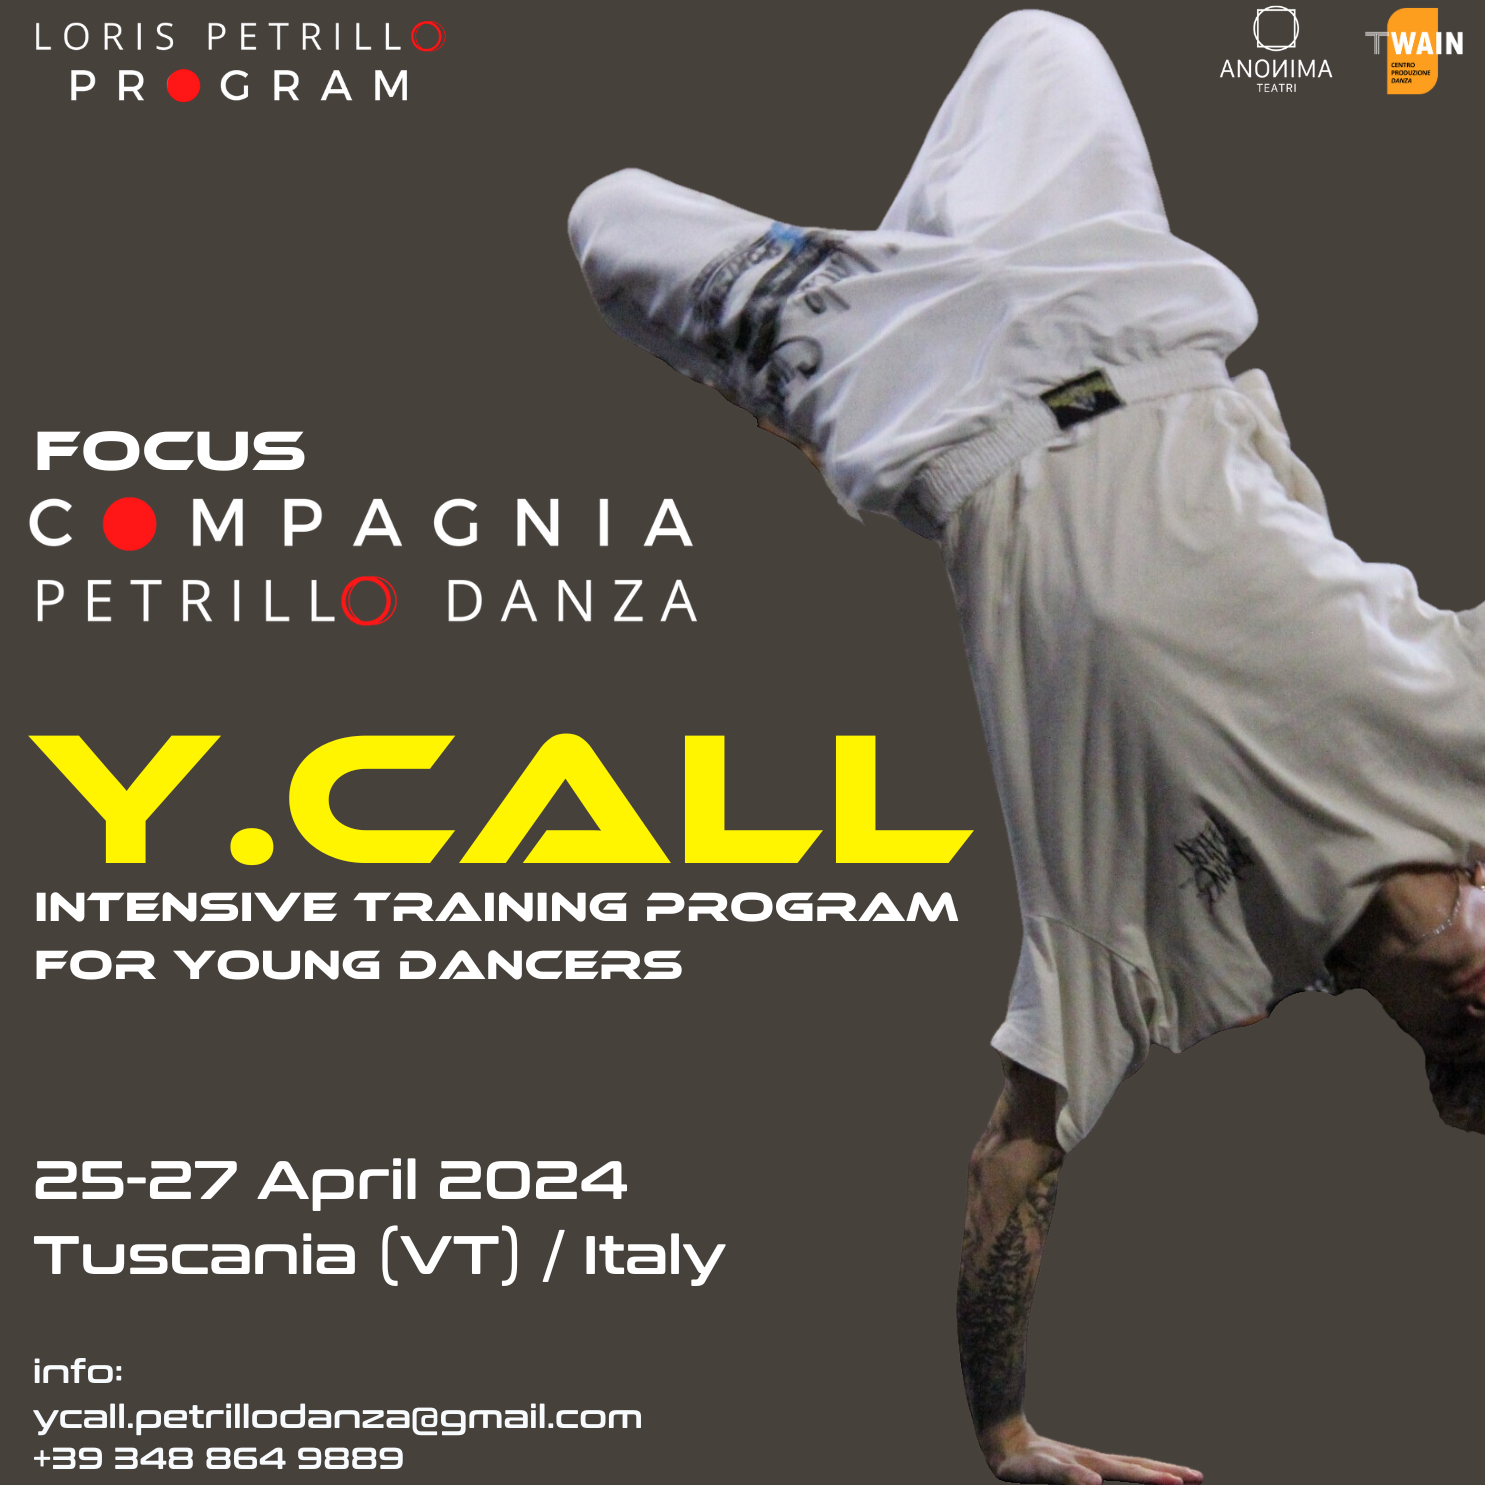 YCALL per giovani danzatori - workshop